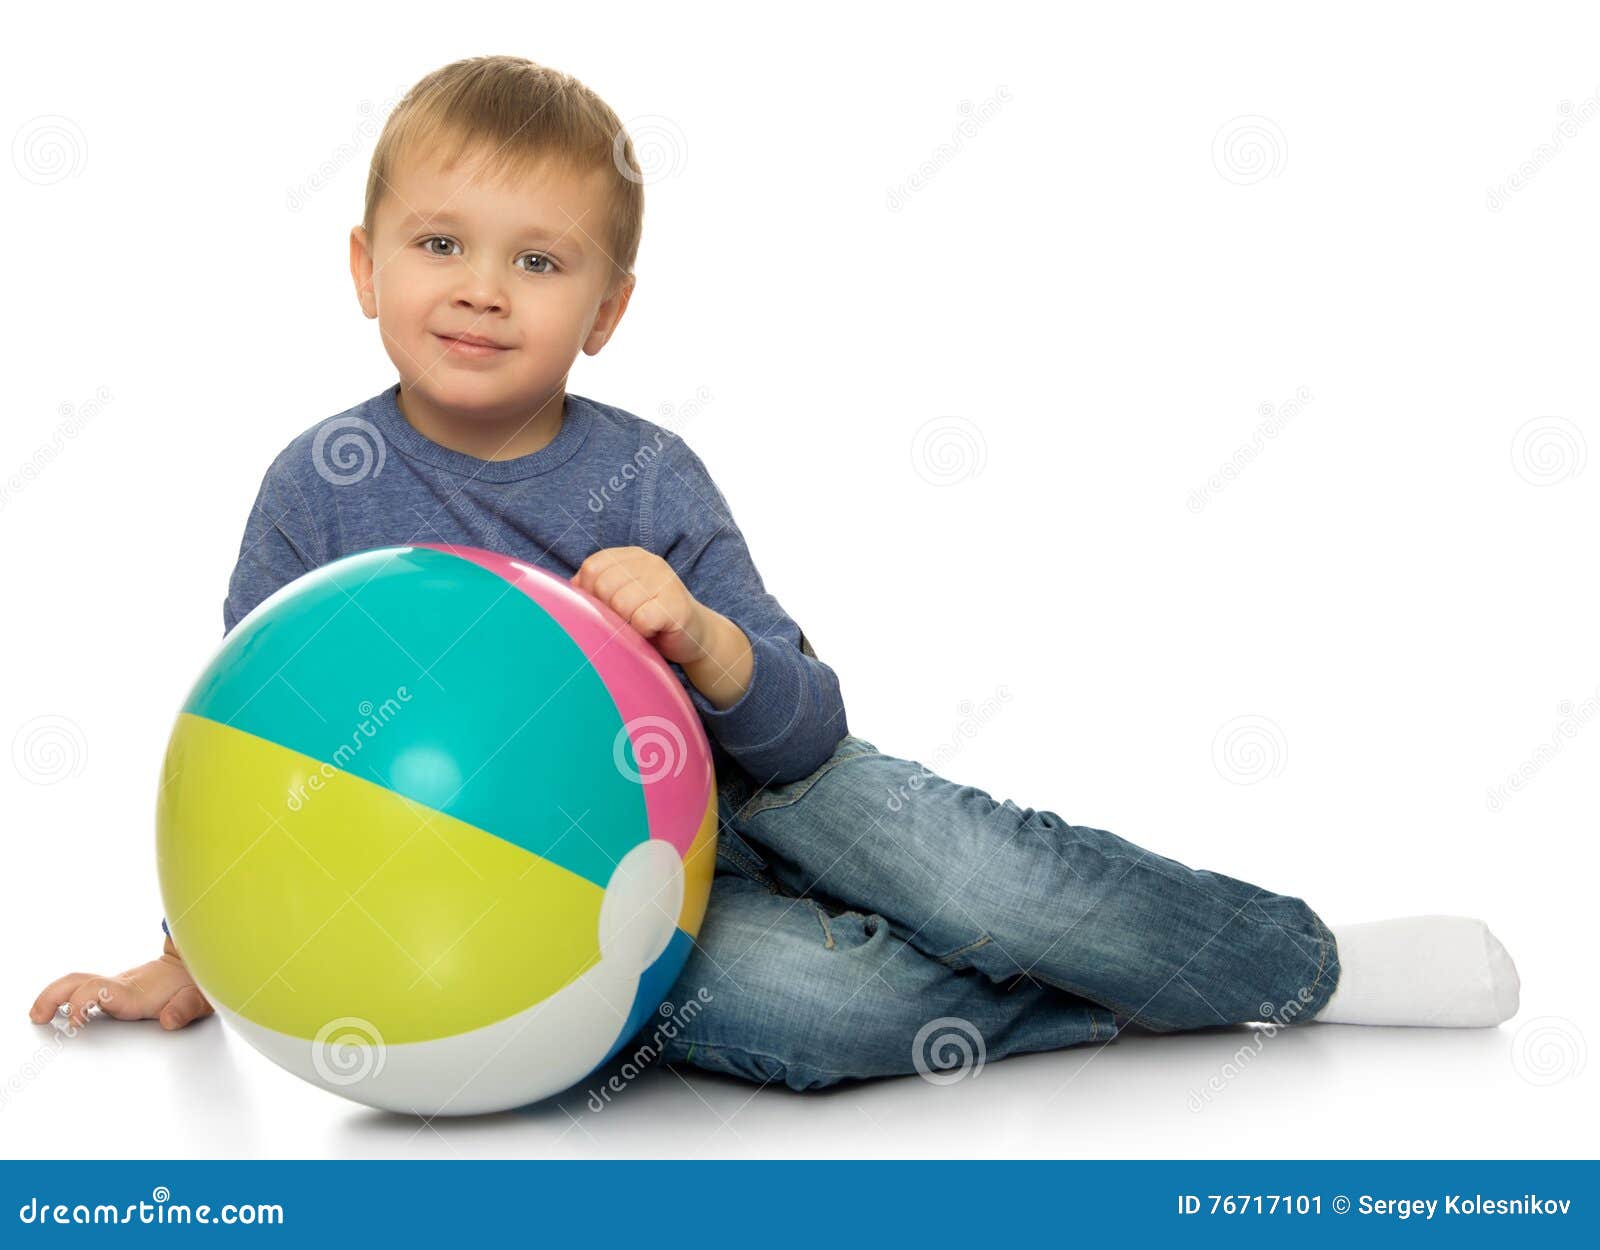 Мальчик с большим шаром. Мальчик и большой мяч. Мальчик надувает мяч. Мальчик надувает мячик на пляже. Мальчики играющие с шариком.